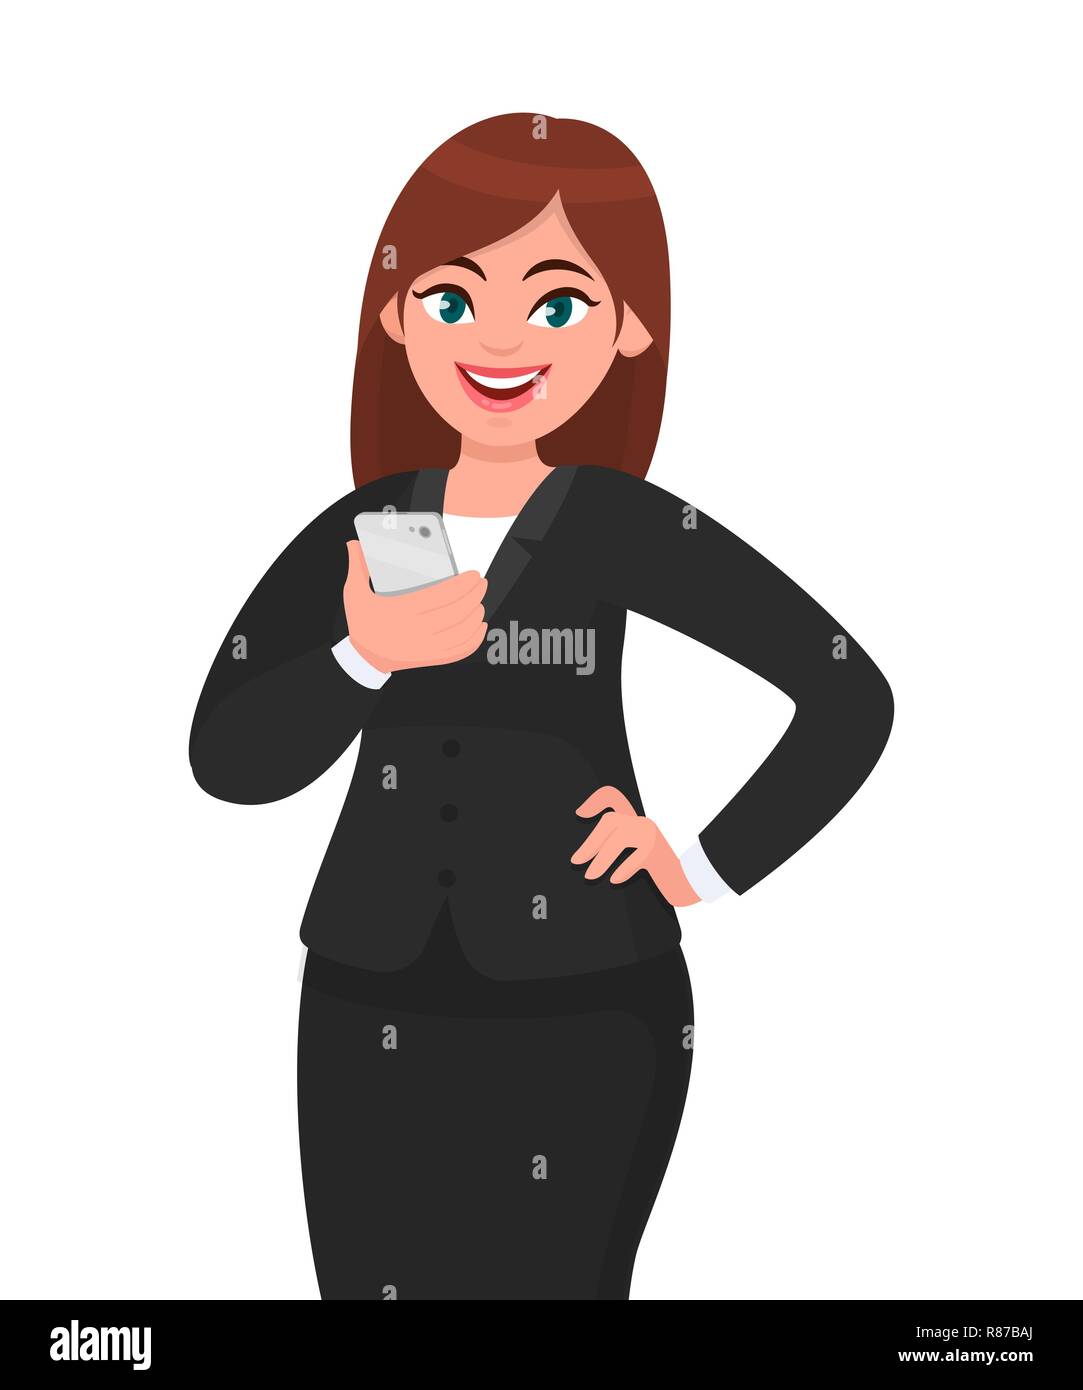 Happy Geschäftsfrau holding Smartphone und Hand posiert auf Hüfte. Handy, Technik, Mobile Apps Konzeption Illustration in Vektor Cartoon Stil. Stock Vektor